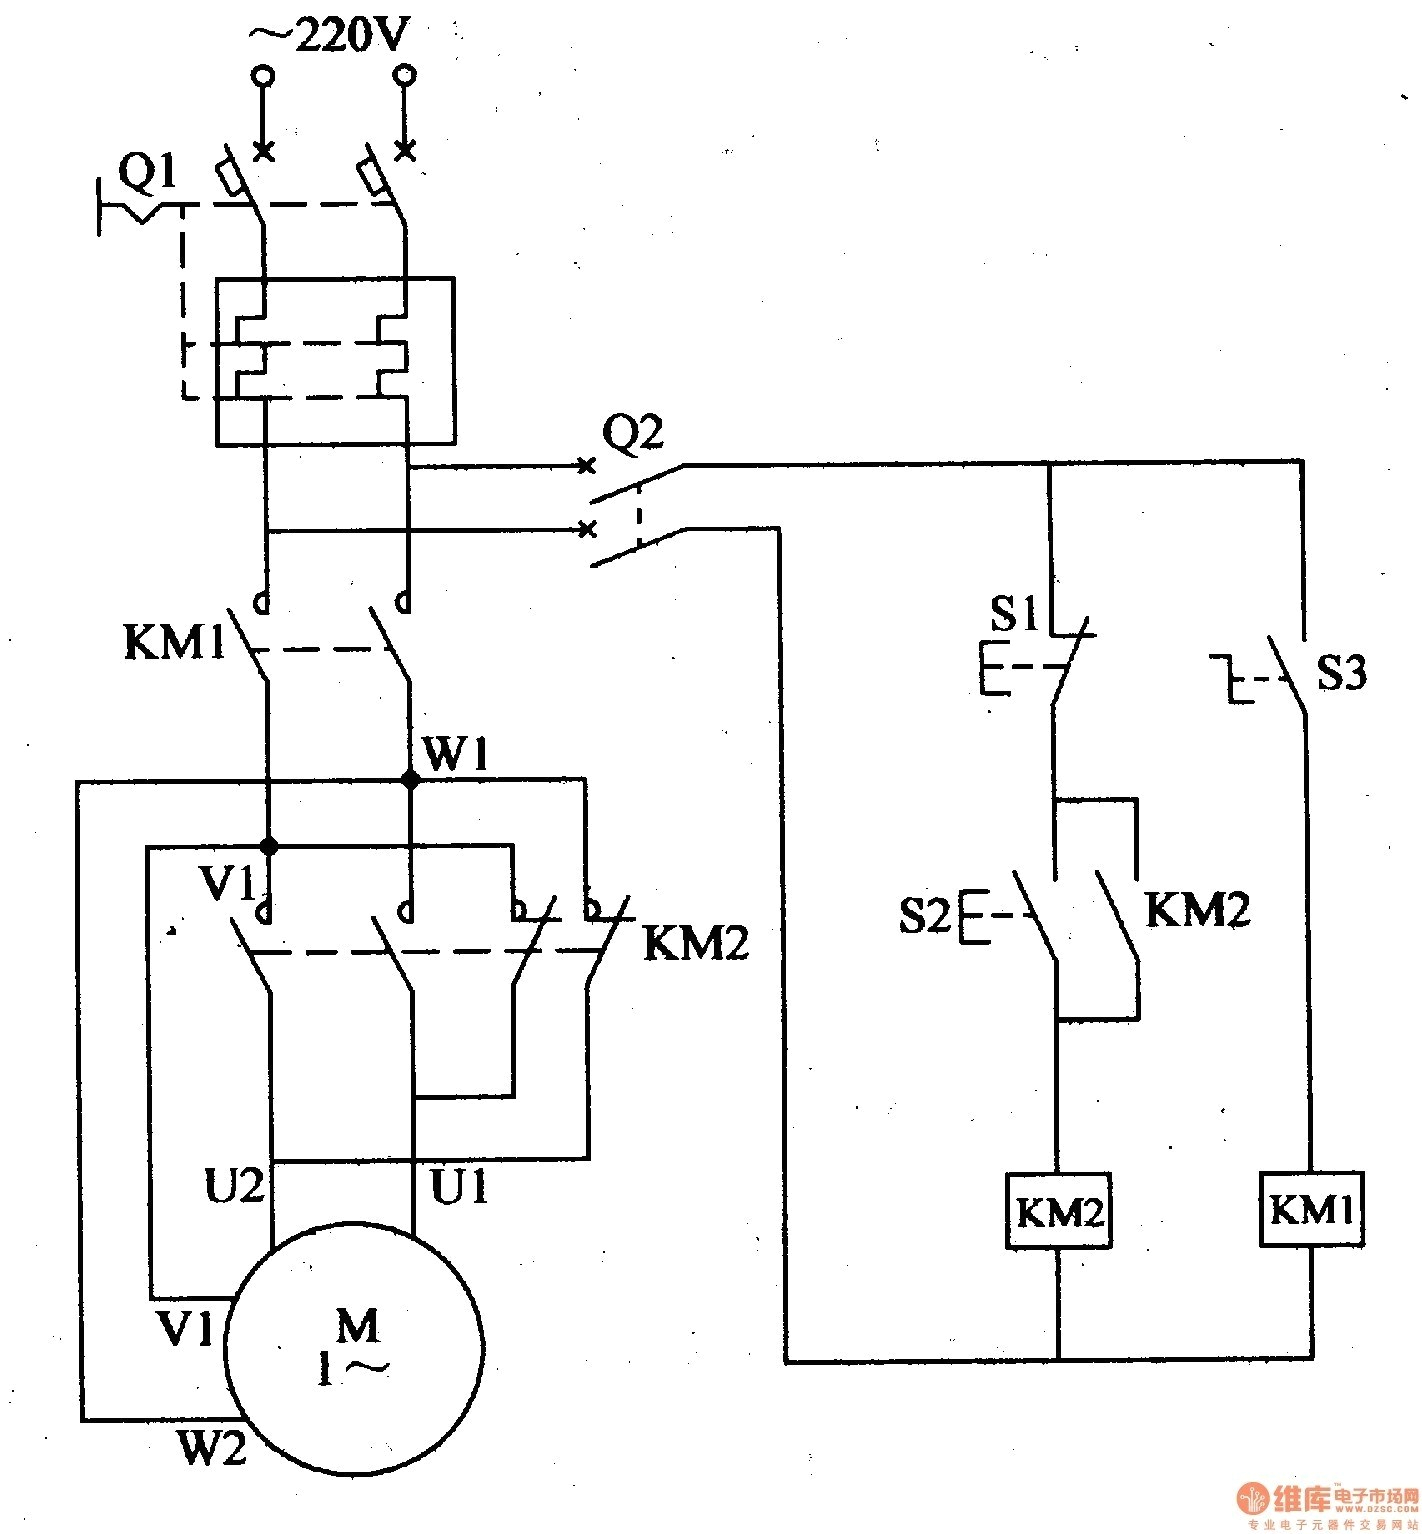 3 phase motor starter wiring diagram wiring diagram for motor contactor best wiring diagram motor fresh single phase motor starter wiring 1n jpg